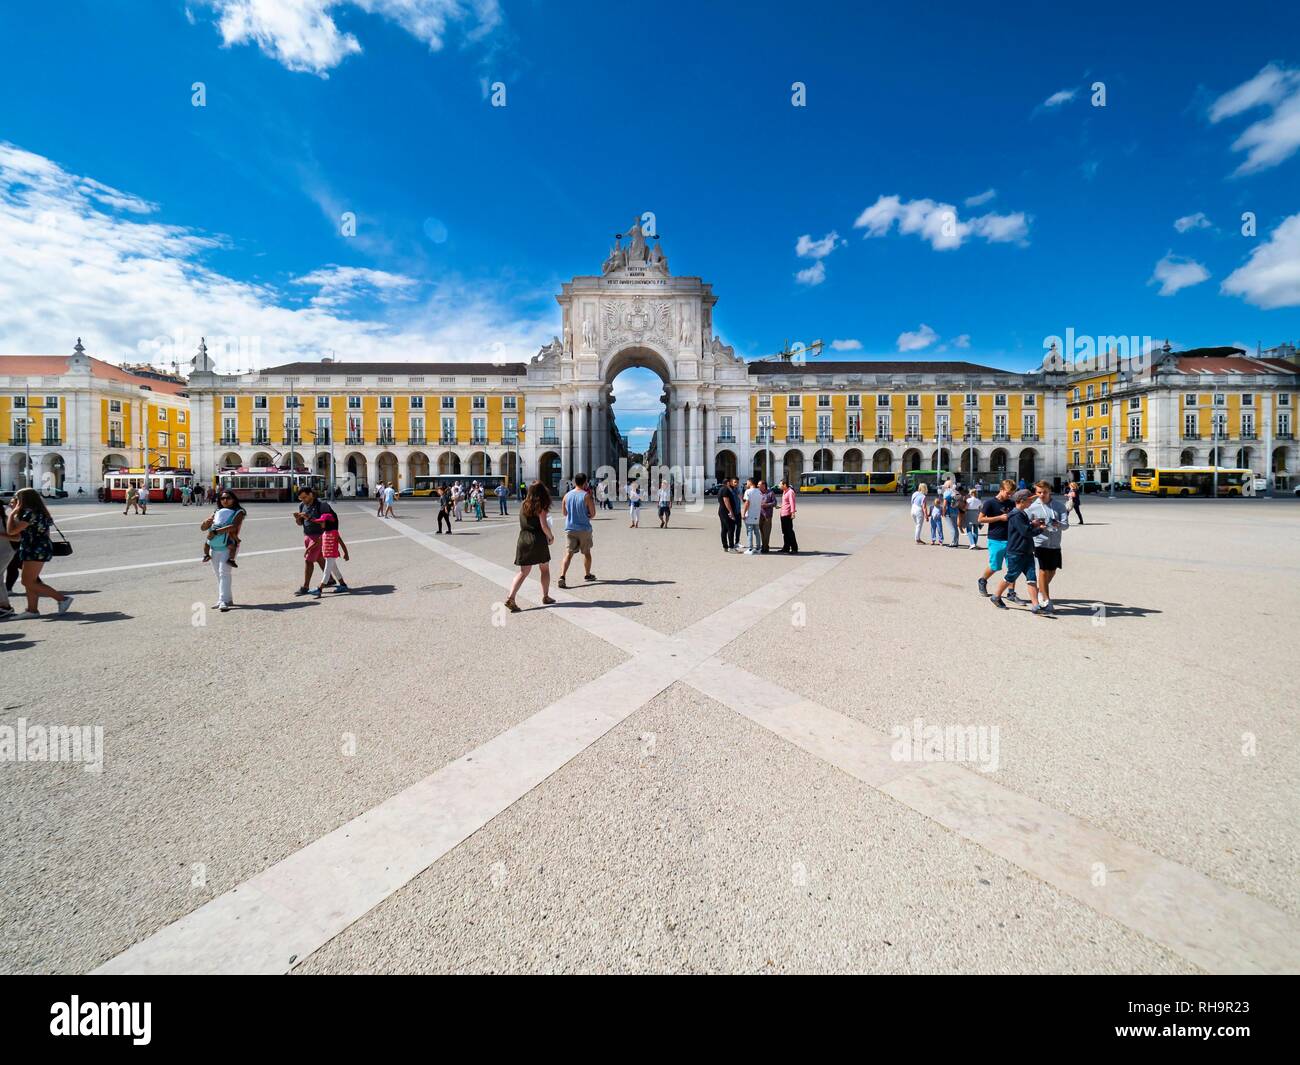 Place of Commerce, Praça do Comercio, Arc de Triomphe Arco da Rua Augusta, Baixa, Lisbon, Portugal Stock Photo